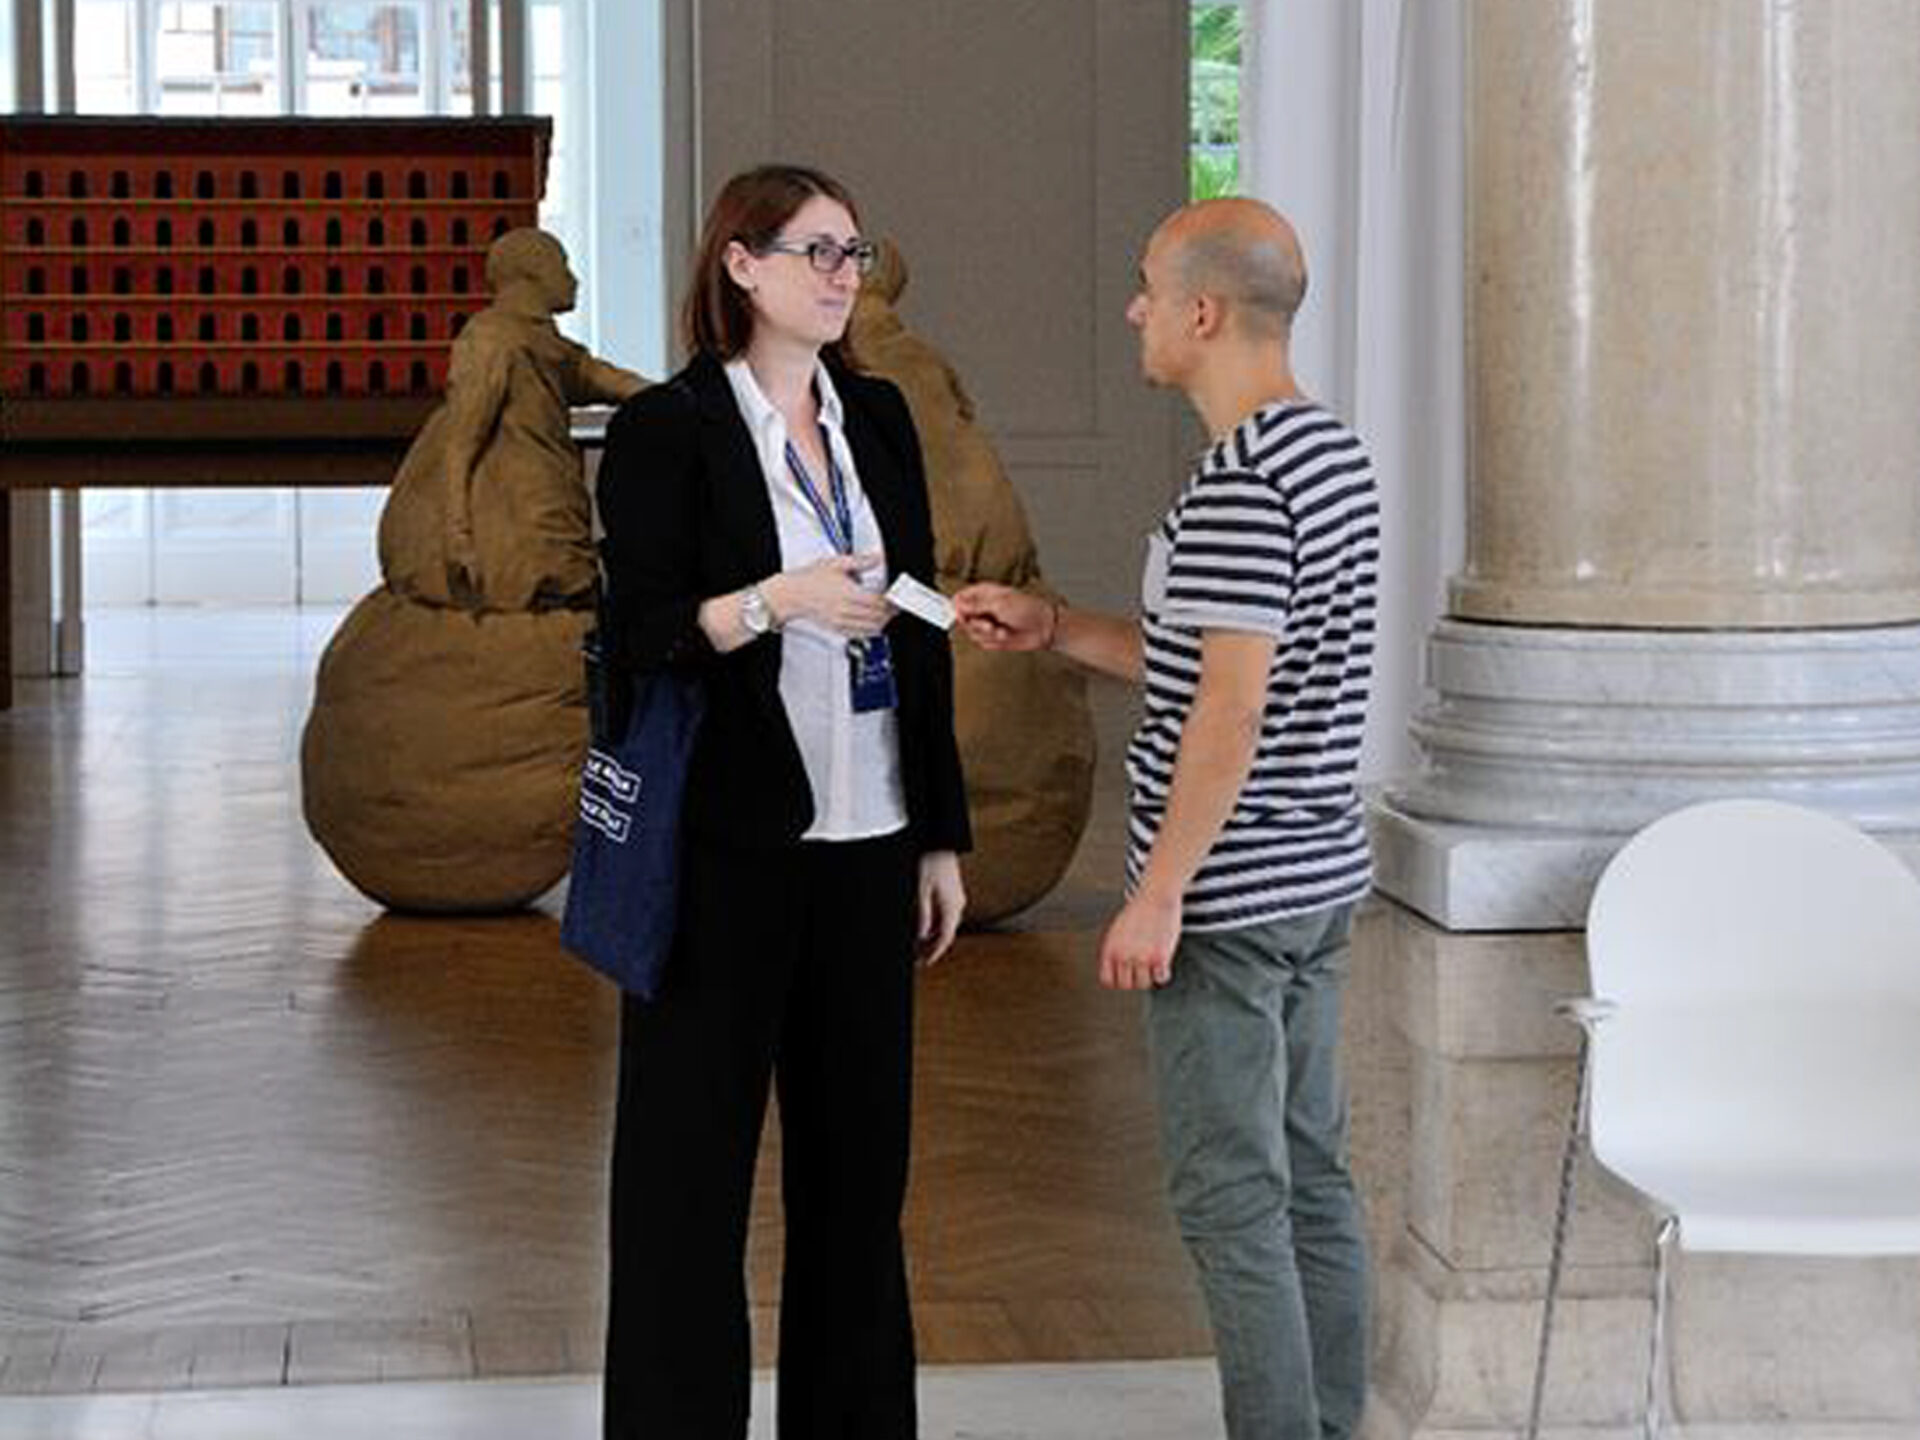 In questa foto puoi vedere un visitatore che mostra il biglietto e chiede aiuto a una persona con il cartellino alla Galleria Nazionale d'Arte Moderna e contemporanea di Roma